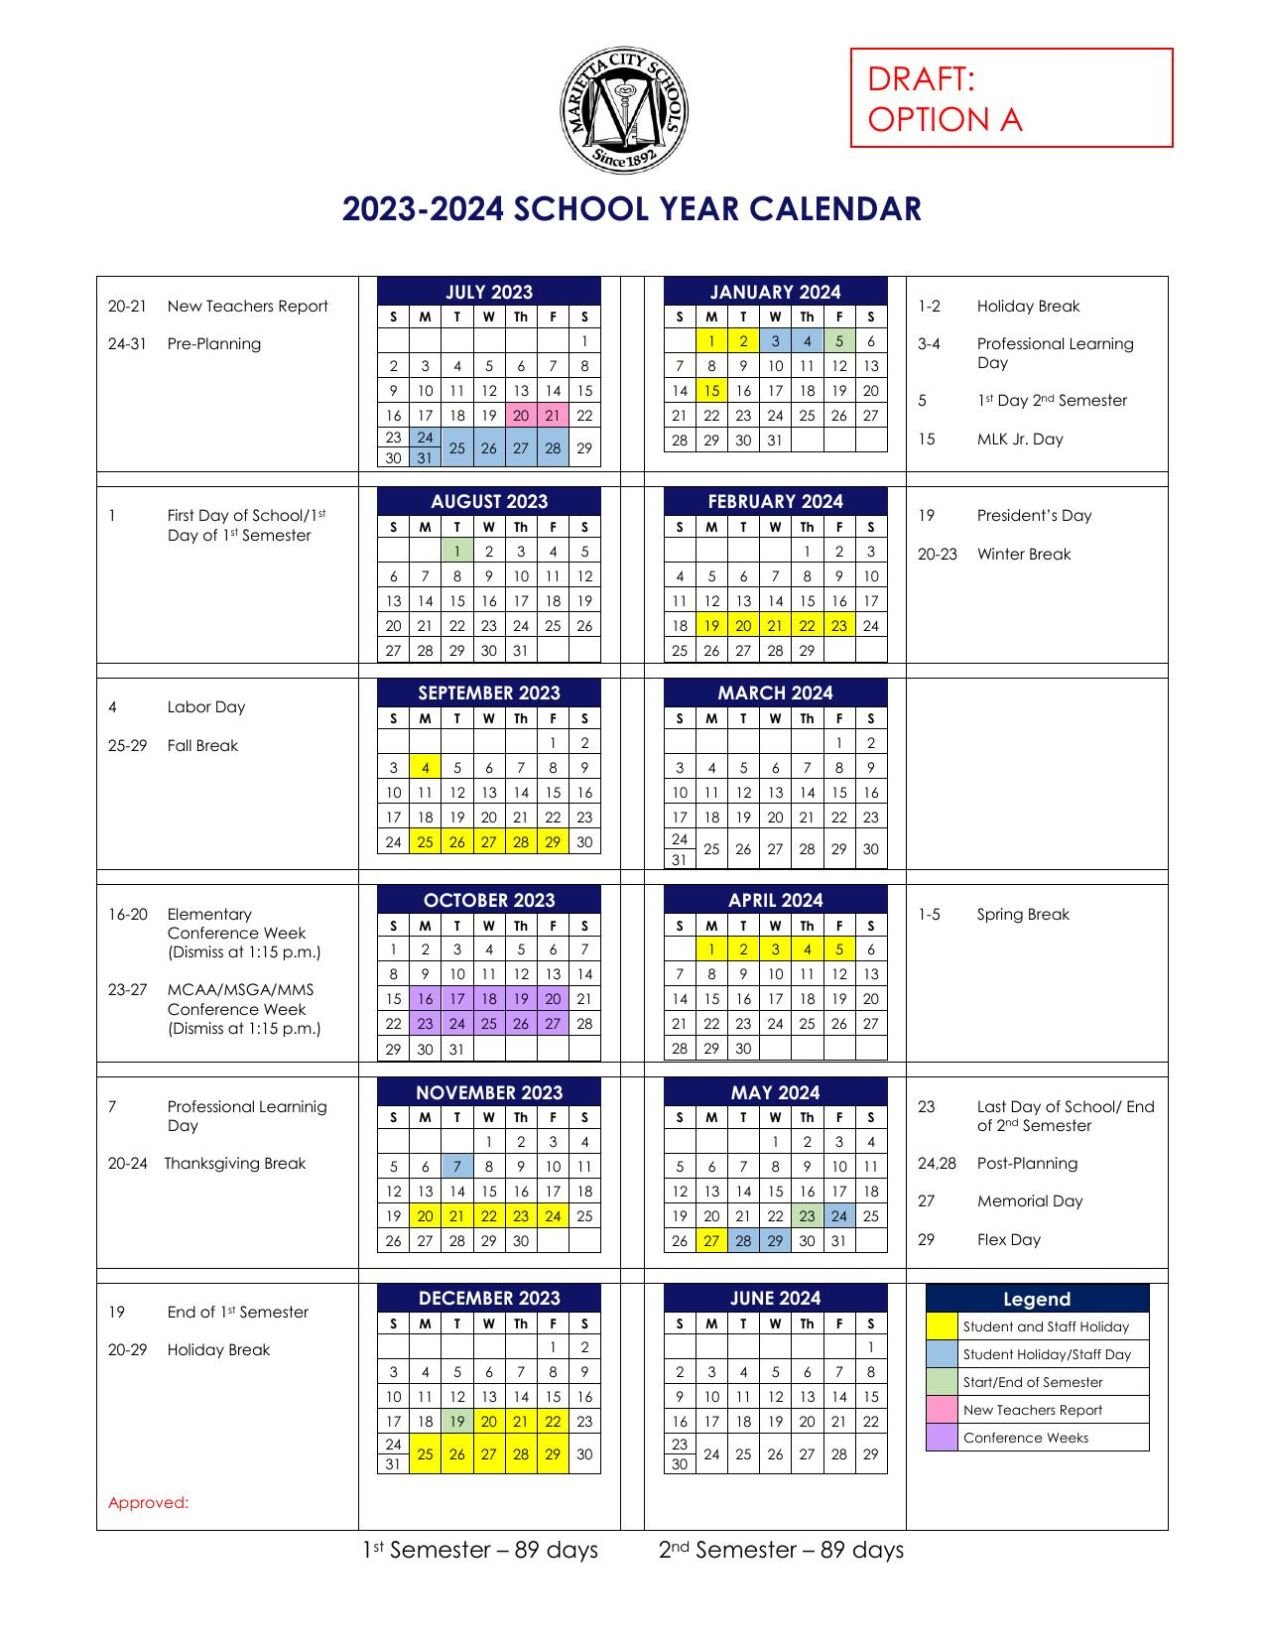 Malta School Calendar 2023 2024 Get Calendar 2023 Update